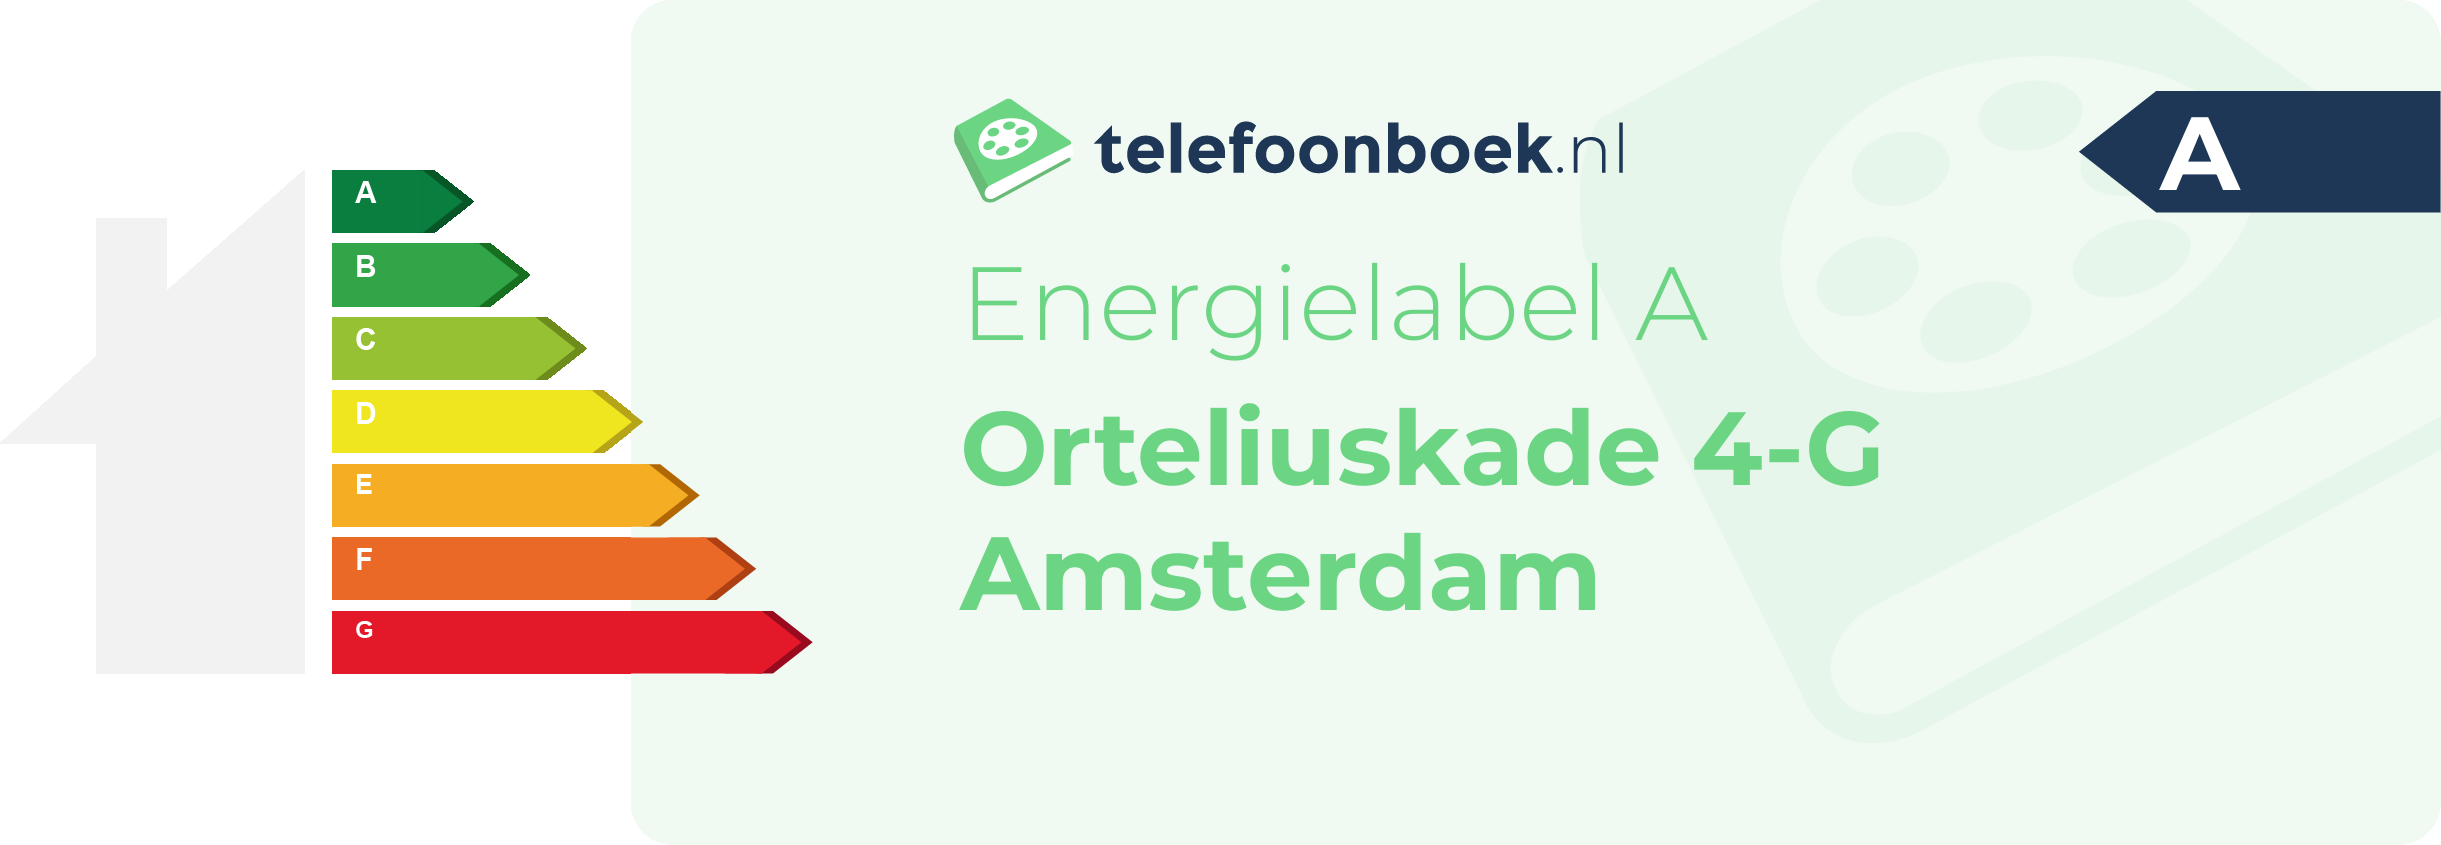 Energielabel Orteliuskade 4-G Amsterdam